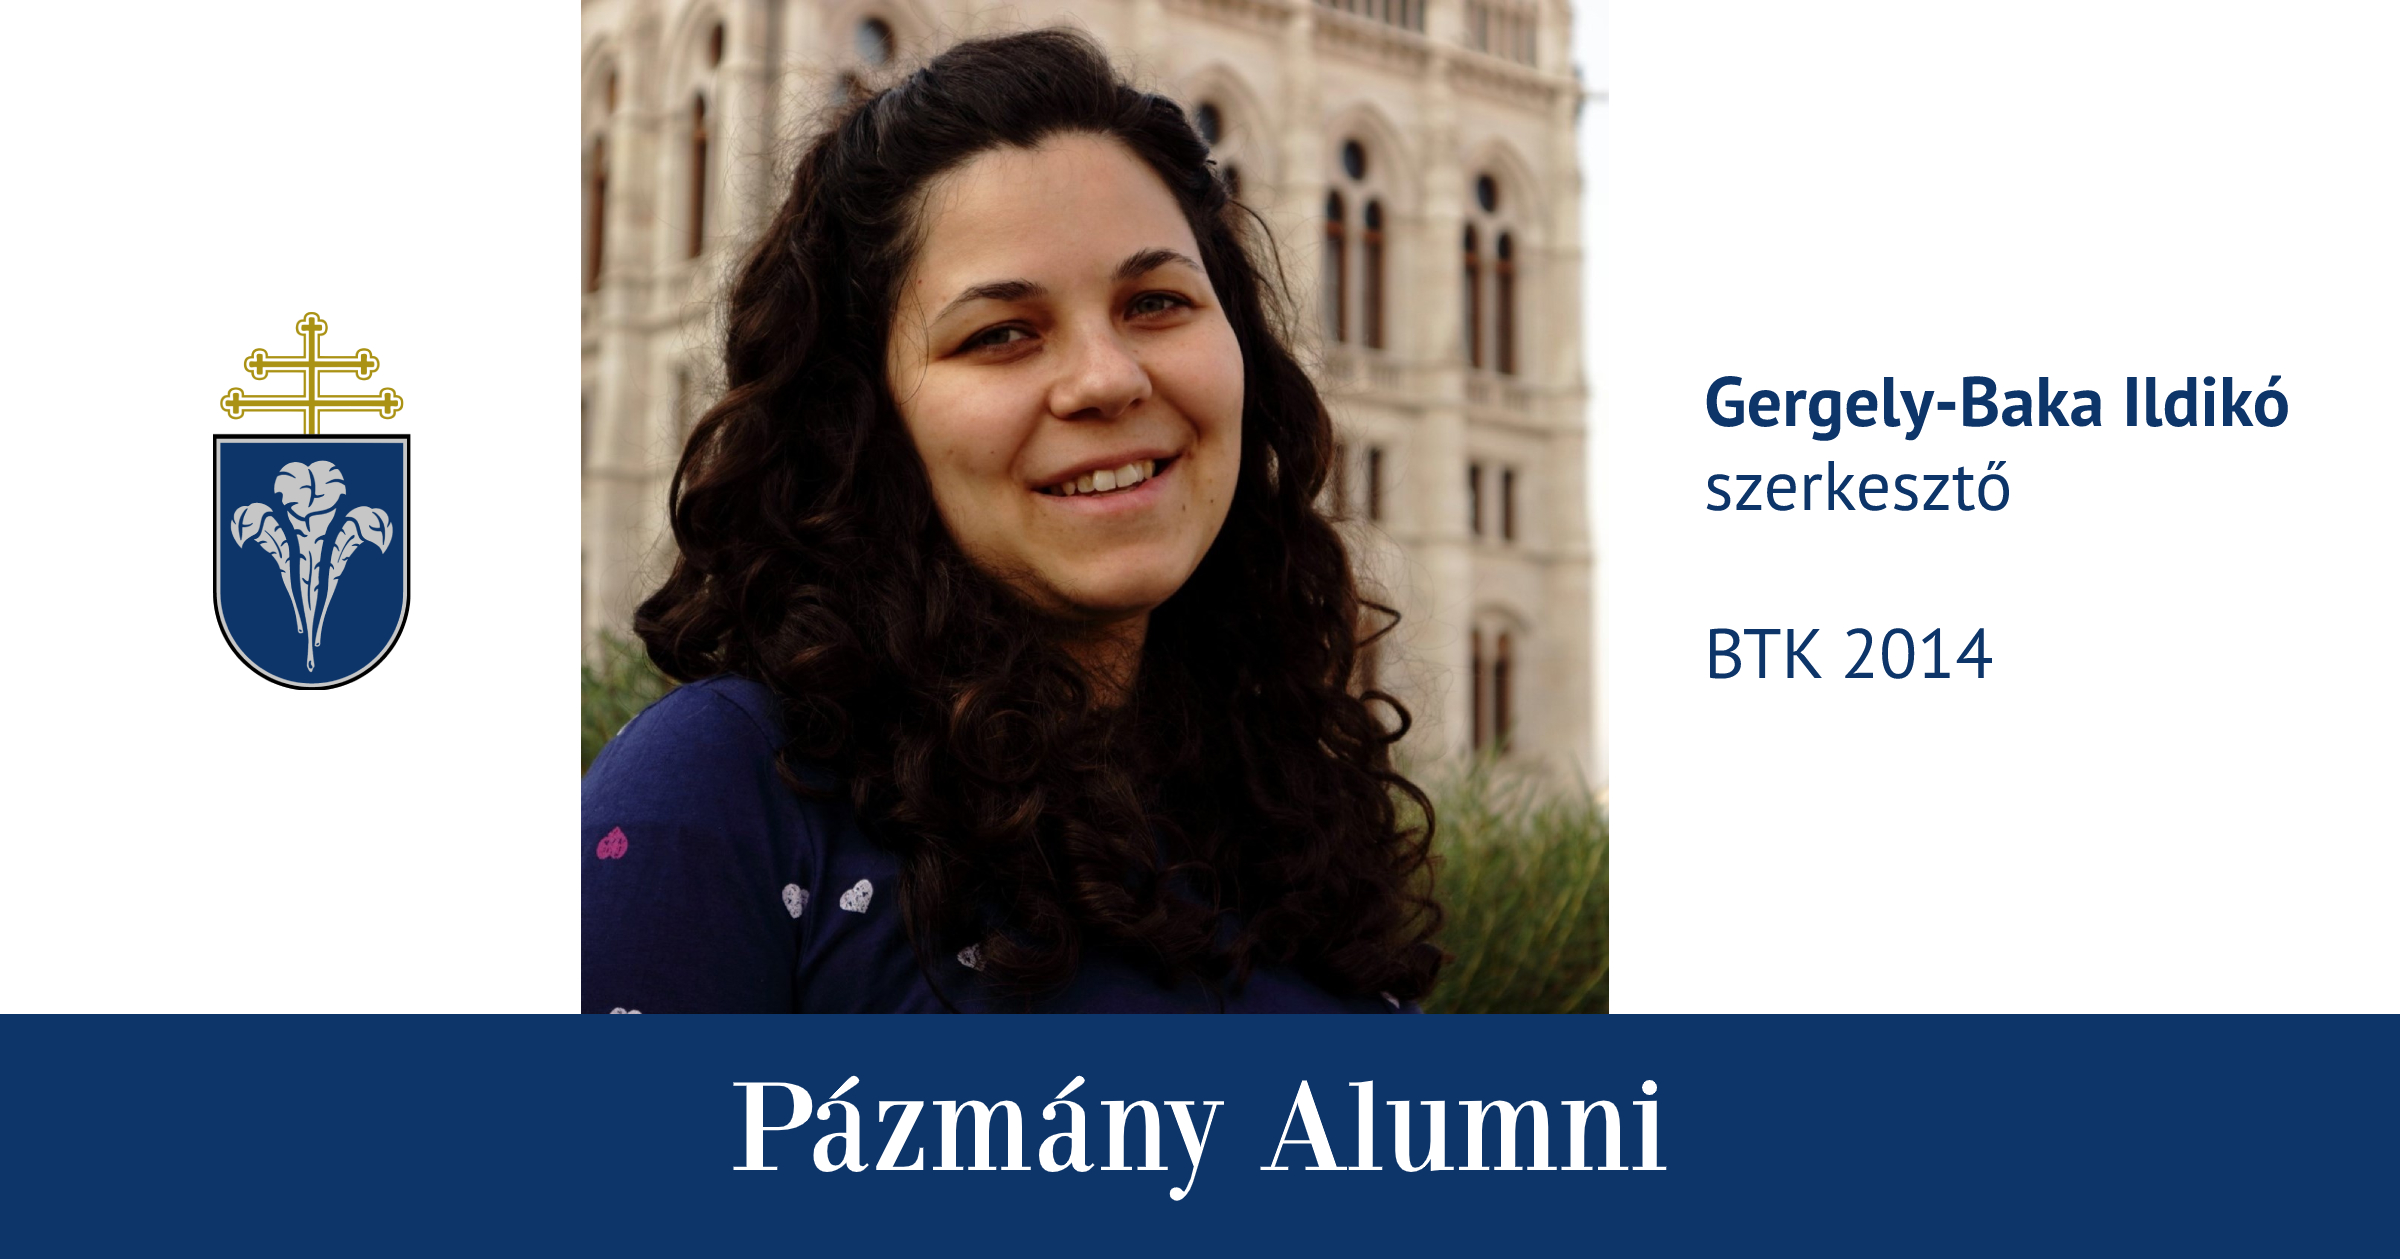 Pázmány Alumni: interjú Gergely-Baka Ildikóval, a BTK egykori hallgatójával